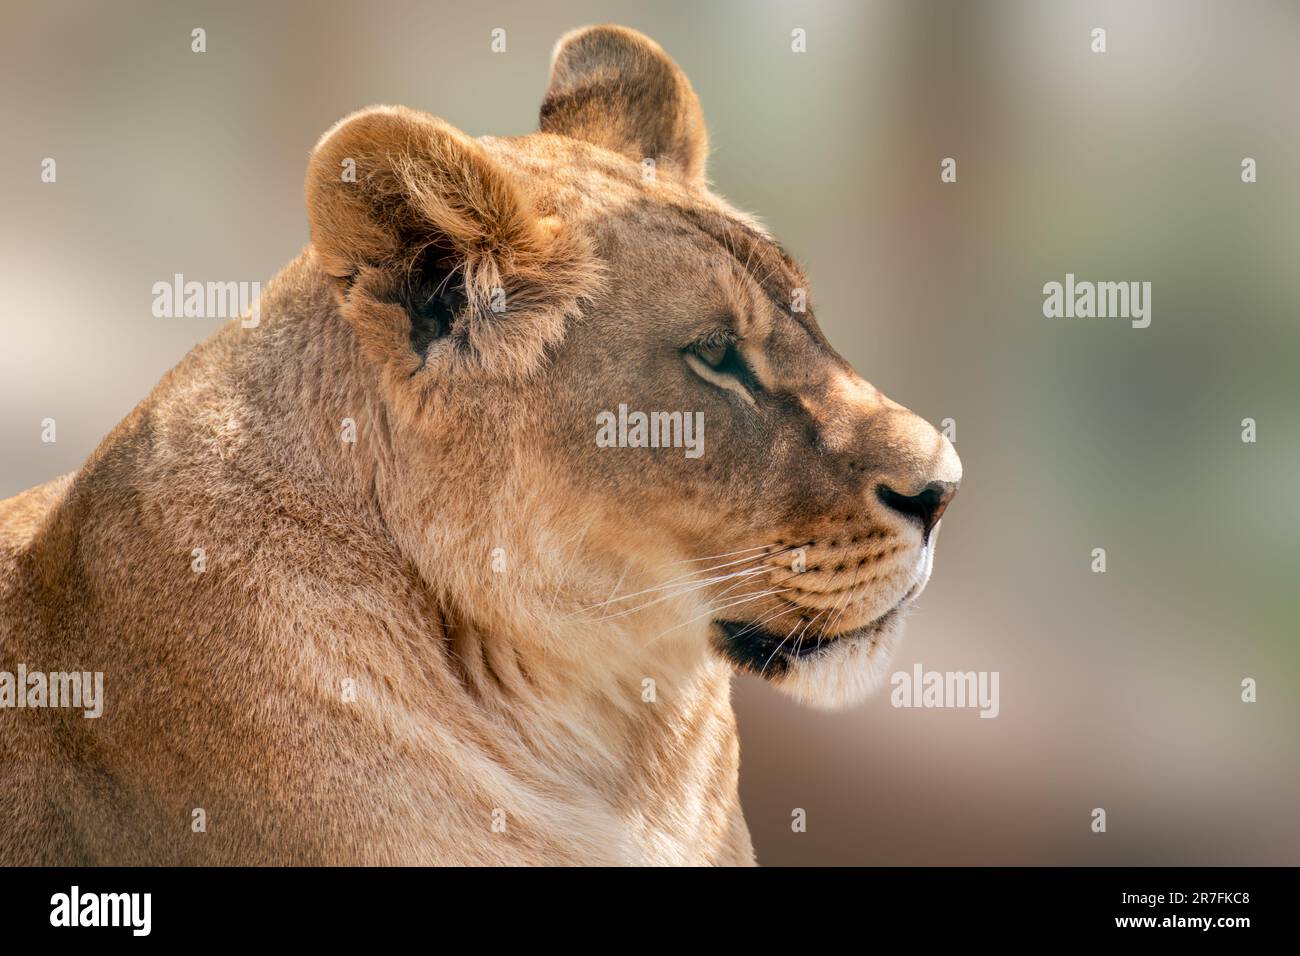 Löwenfrau ruhig, sieht nach rechts aus, Löweninnen Porträt, Nahaufnahme mit verschwommenem Hintergrund. Wilde Tiere, große Katze Stockfoto